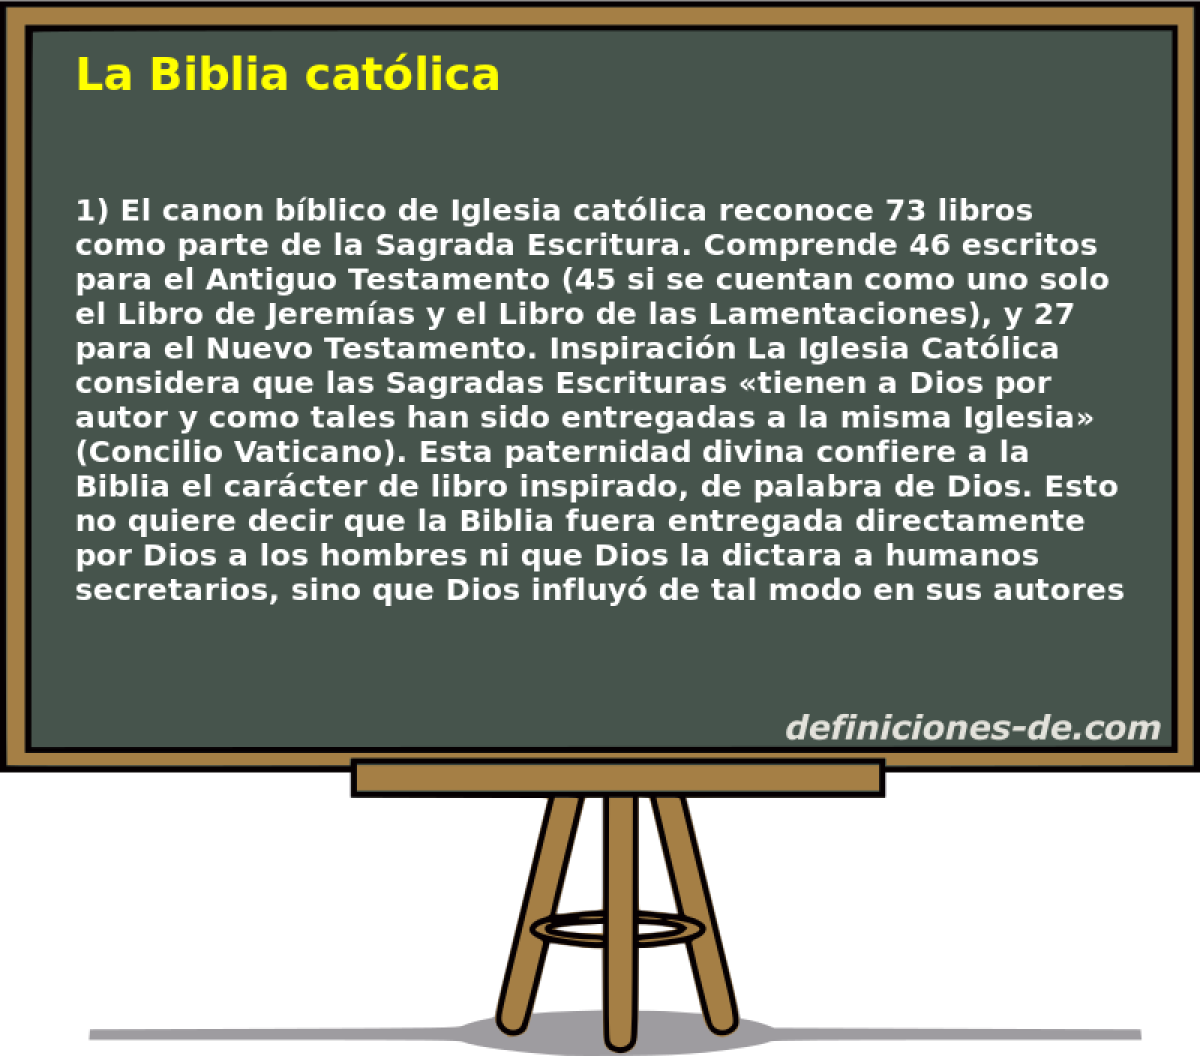 La Biblia catlica 